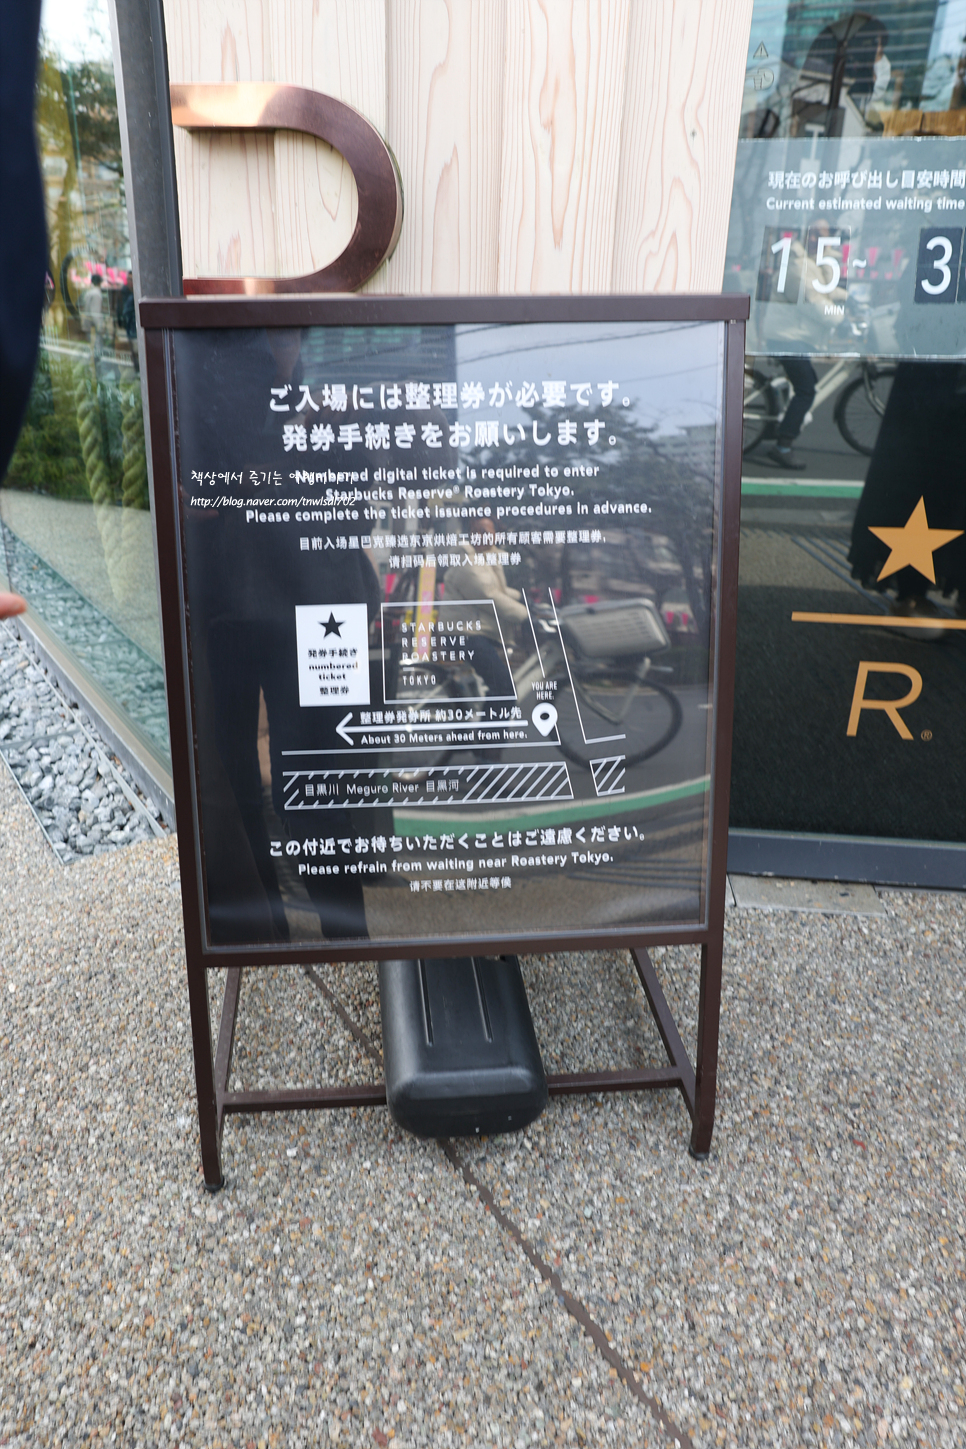 일본 도쿄 자유여행 나카메구로 스타벅스 리저브 로스터리